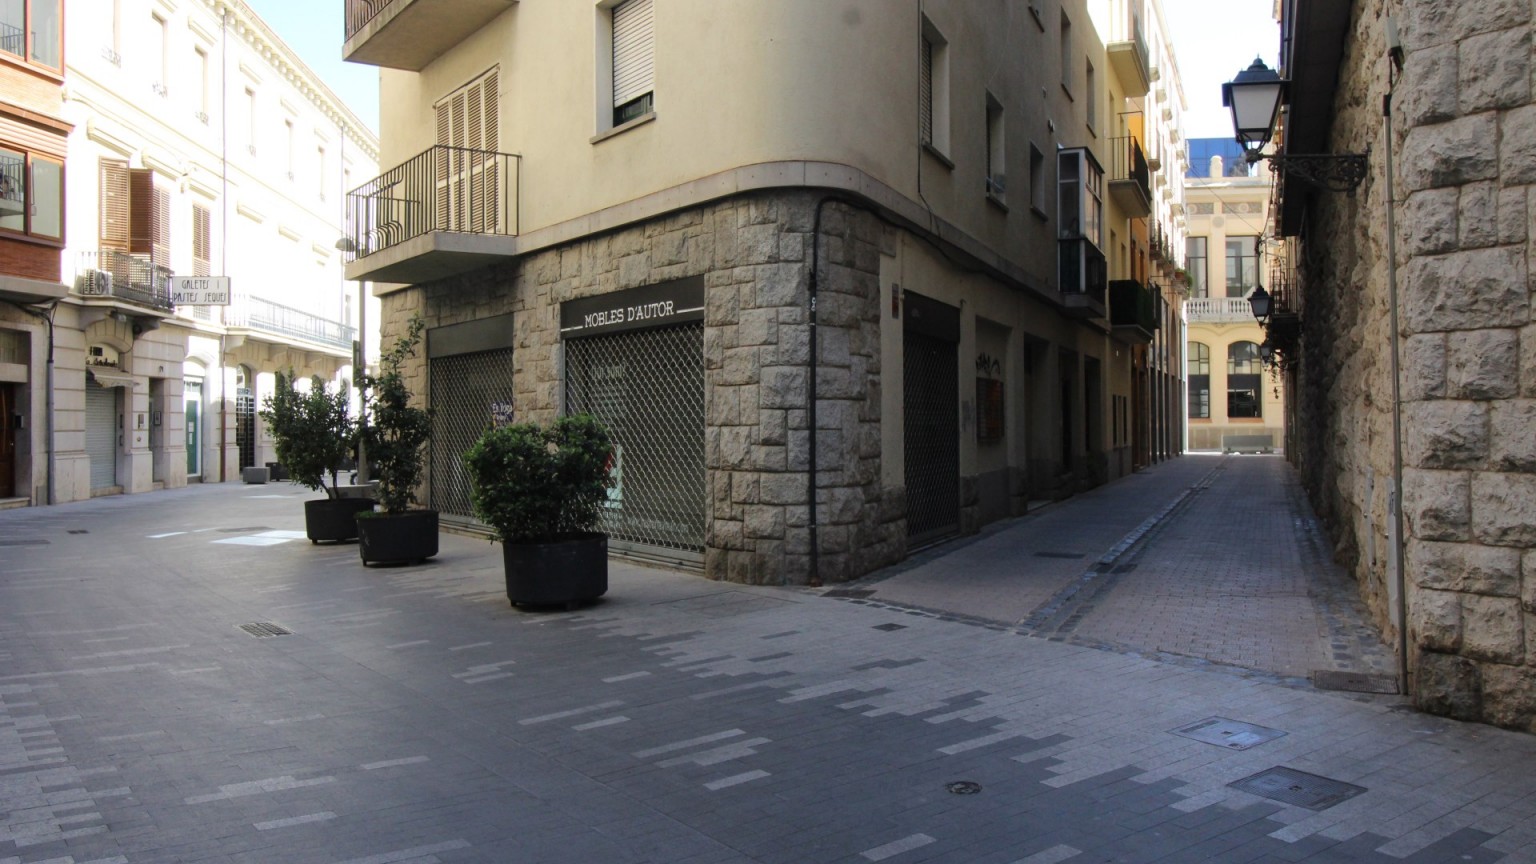 Local de alquiler, en el centro de Figueres. 